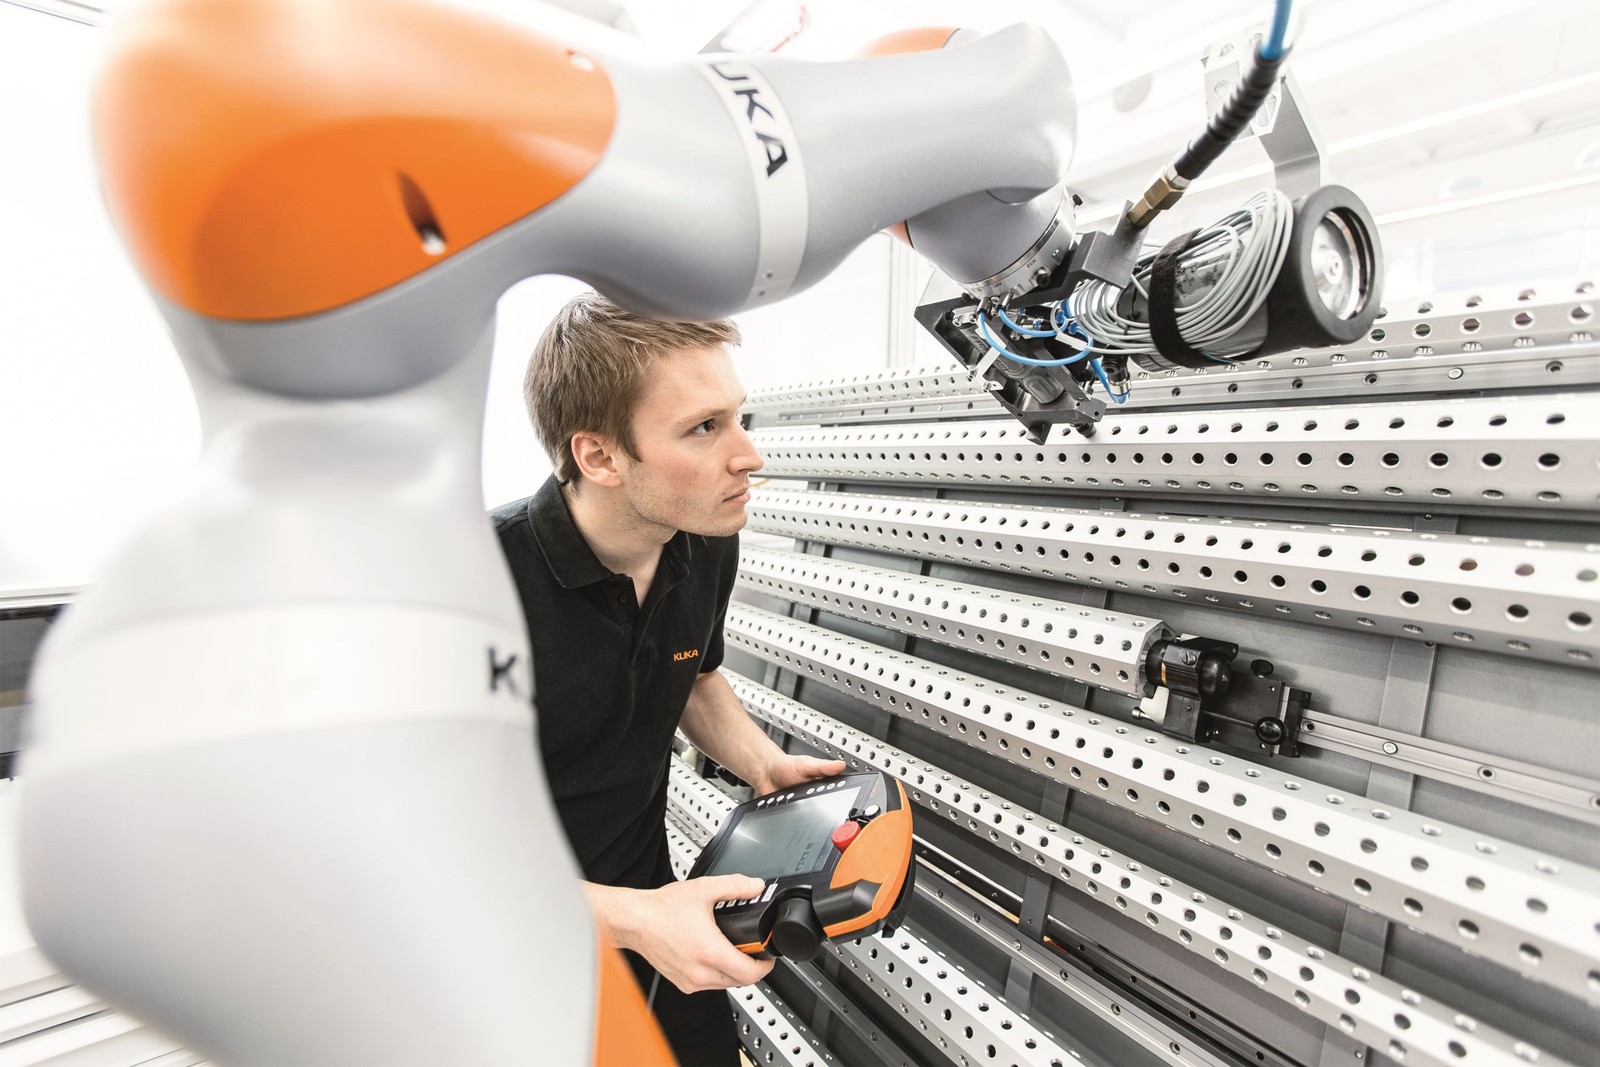 Nach Kuka werdenBearbeitungsprozesse zukünftig auch im Rohrbereich verstärkt von Robotern ausgeführt.